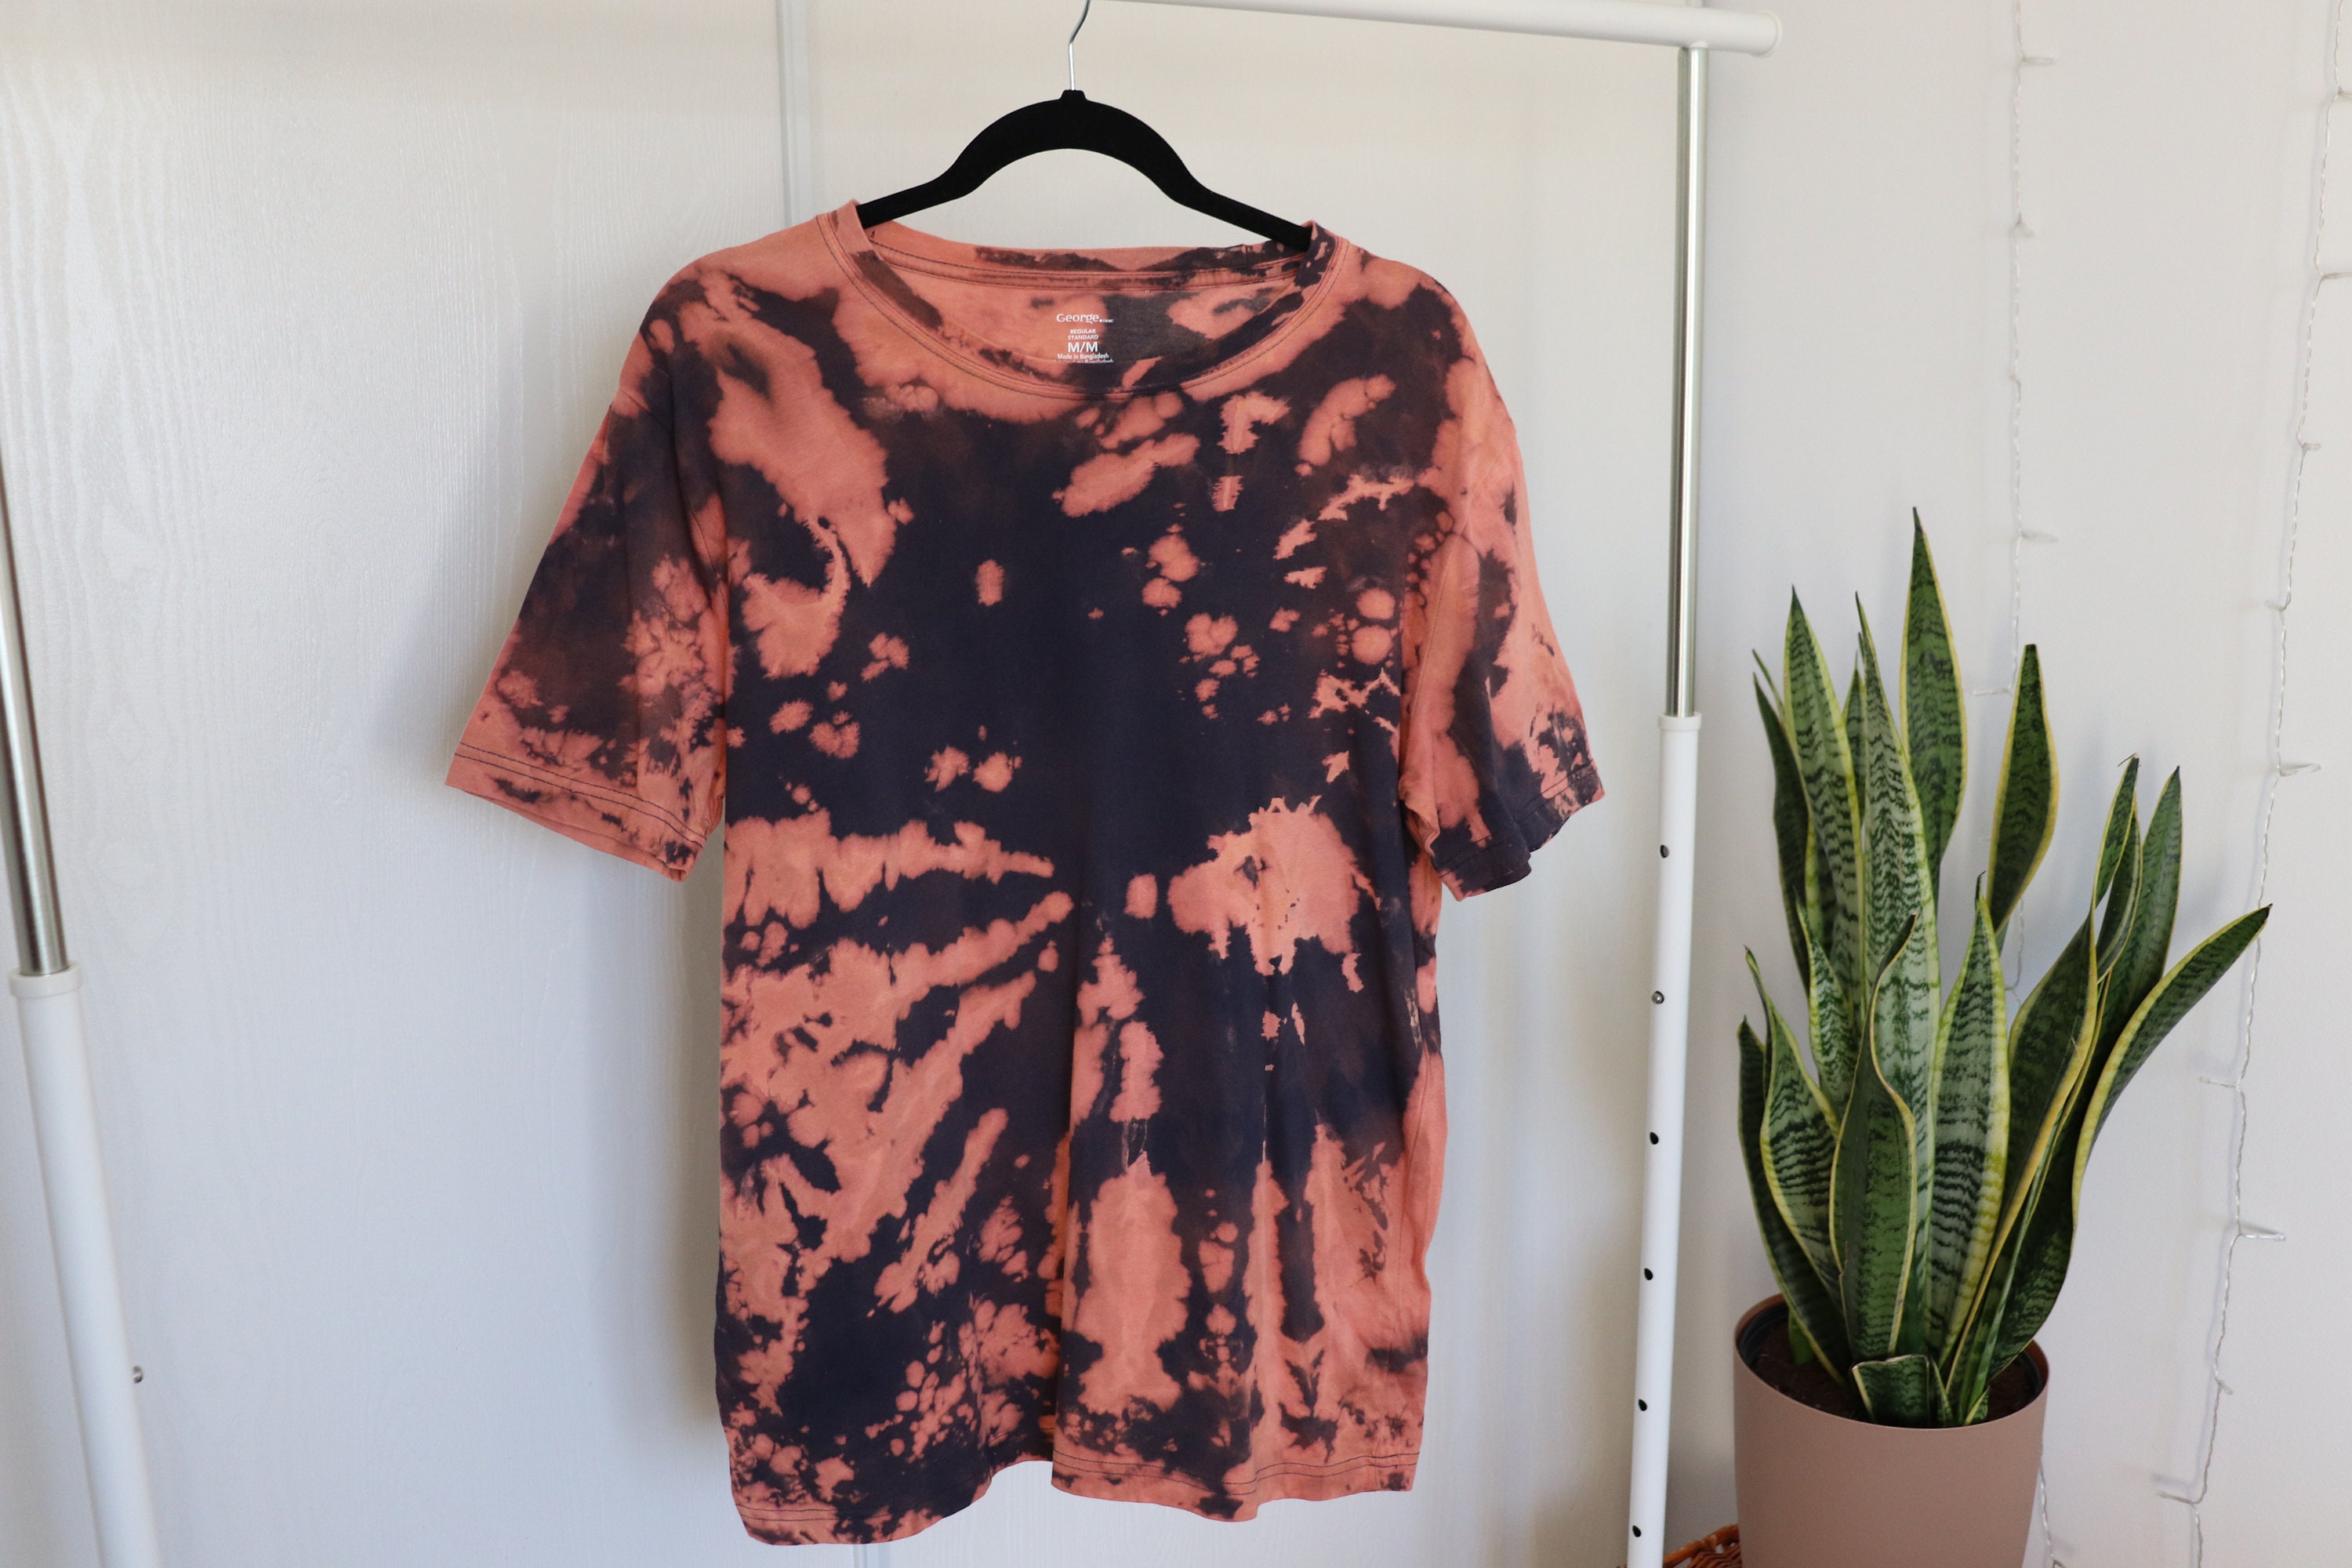 Bleach-dye T-shirt medium dark Marine - Etsy UK